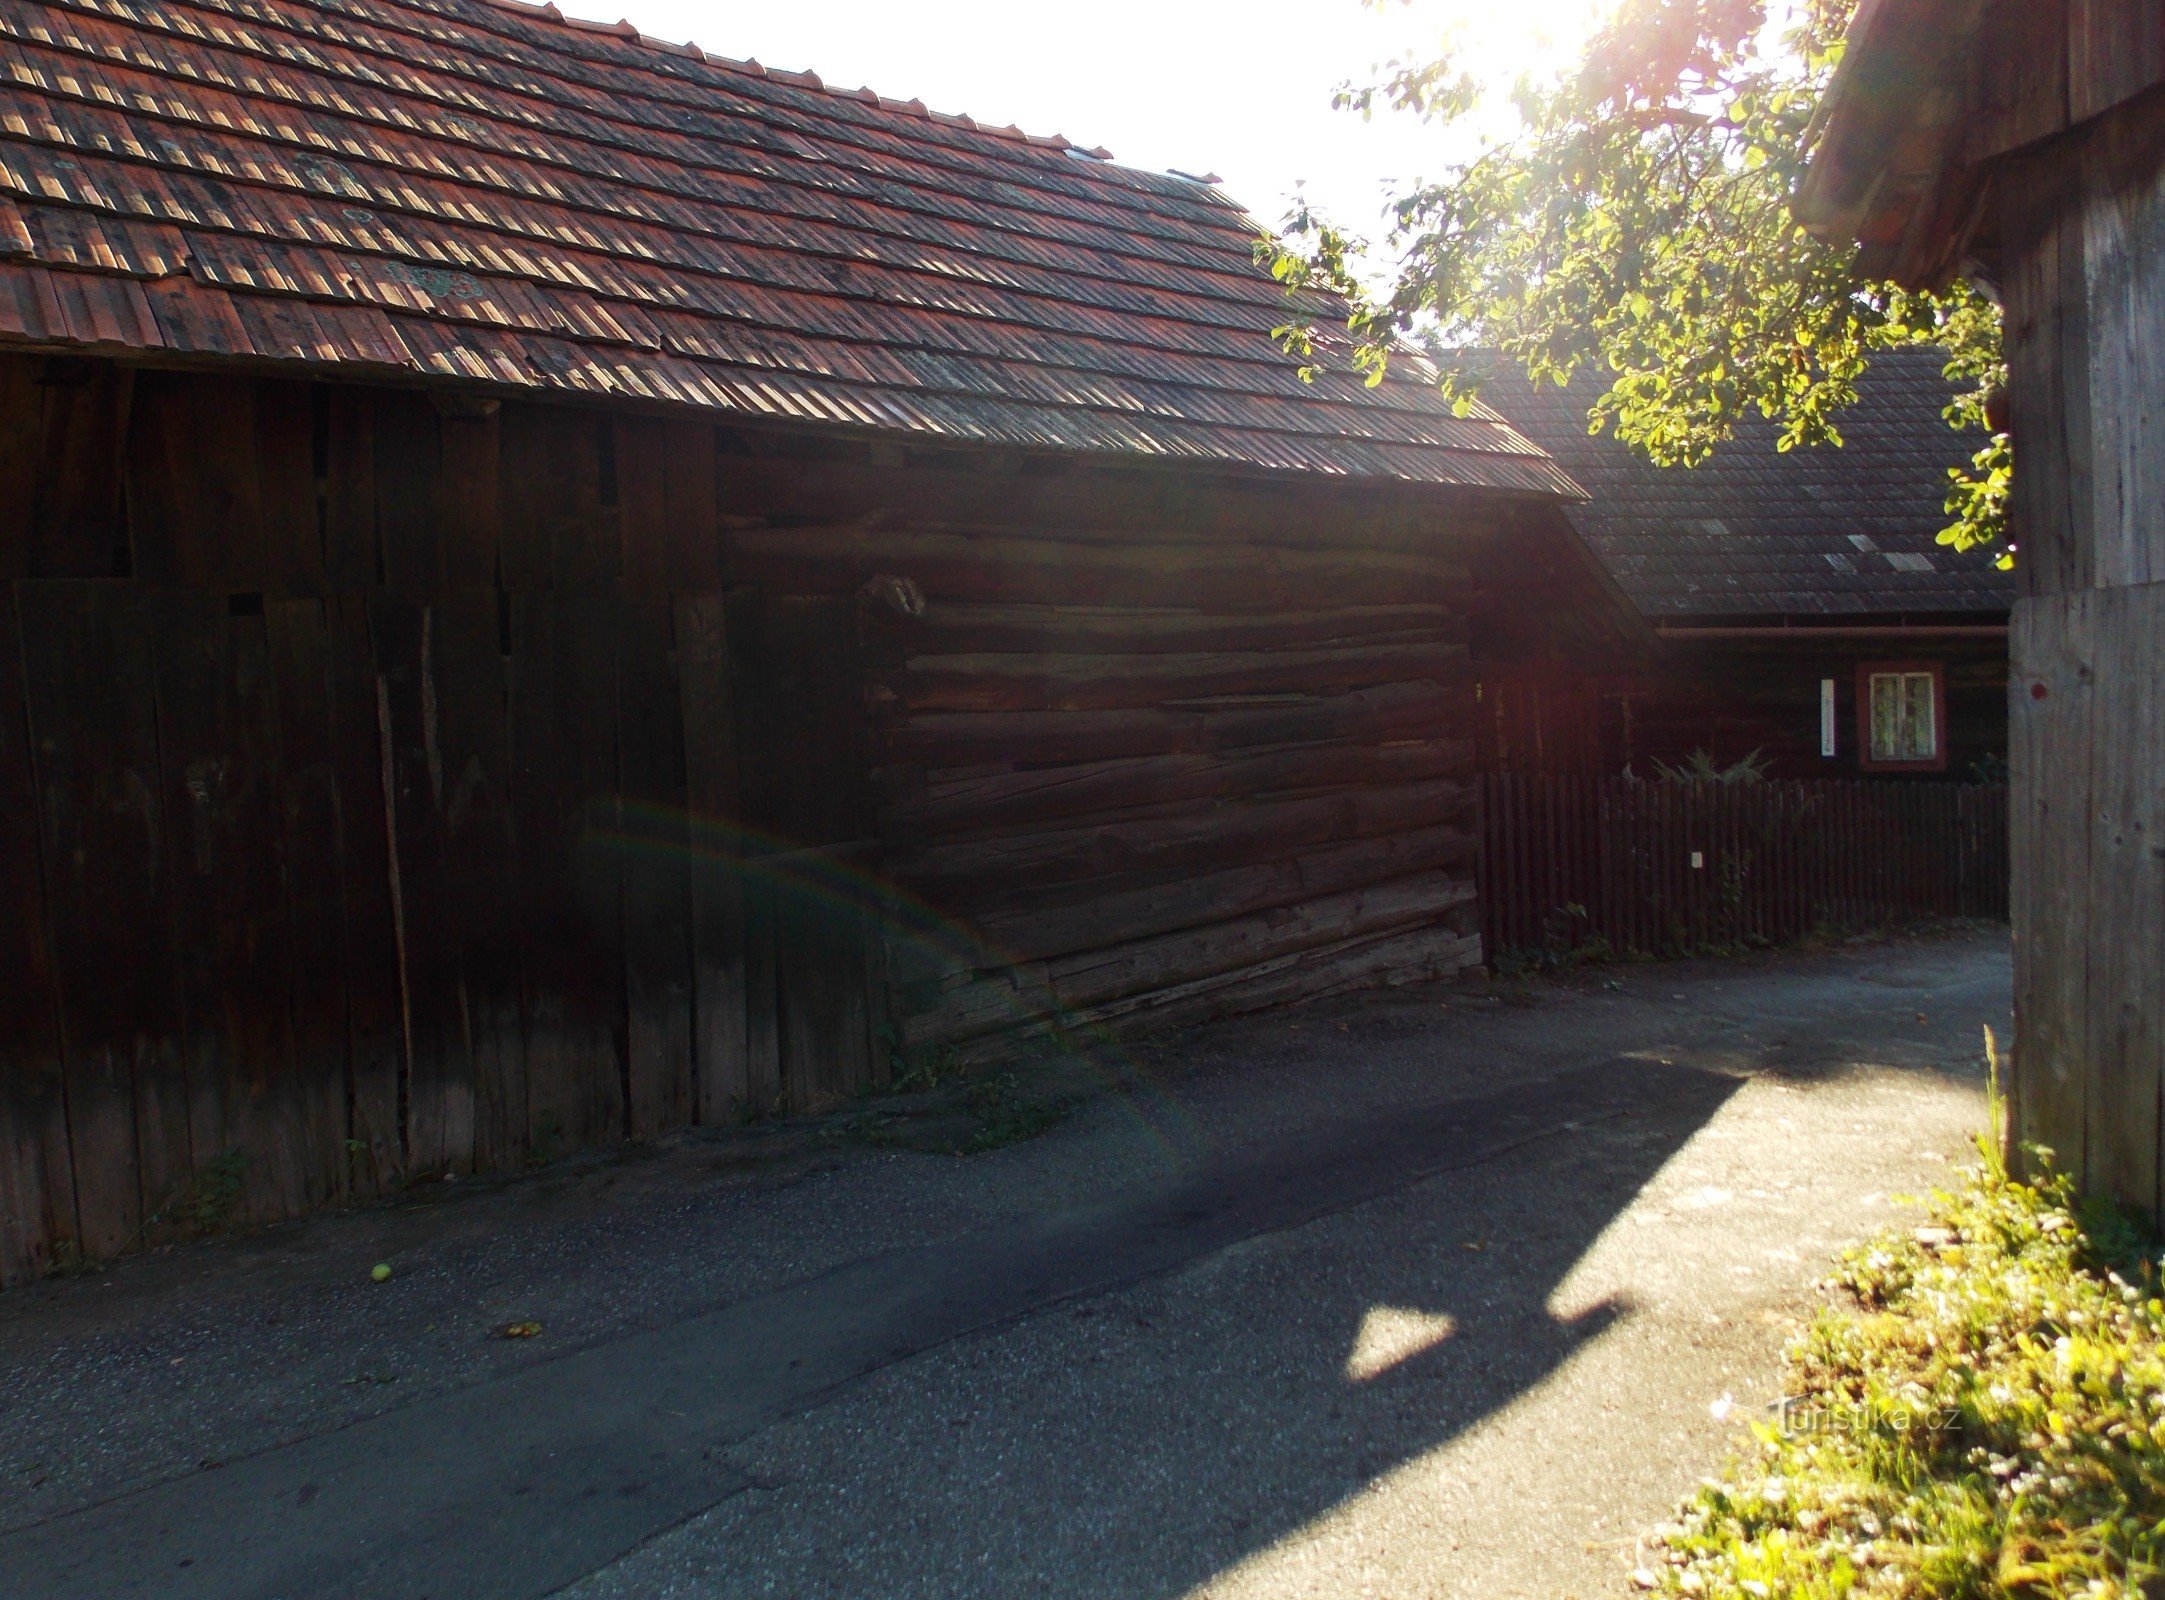 exempel på folklig valachisk arkitektur i byn Prlov